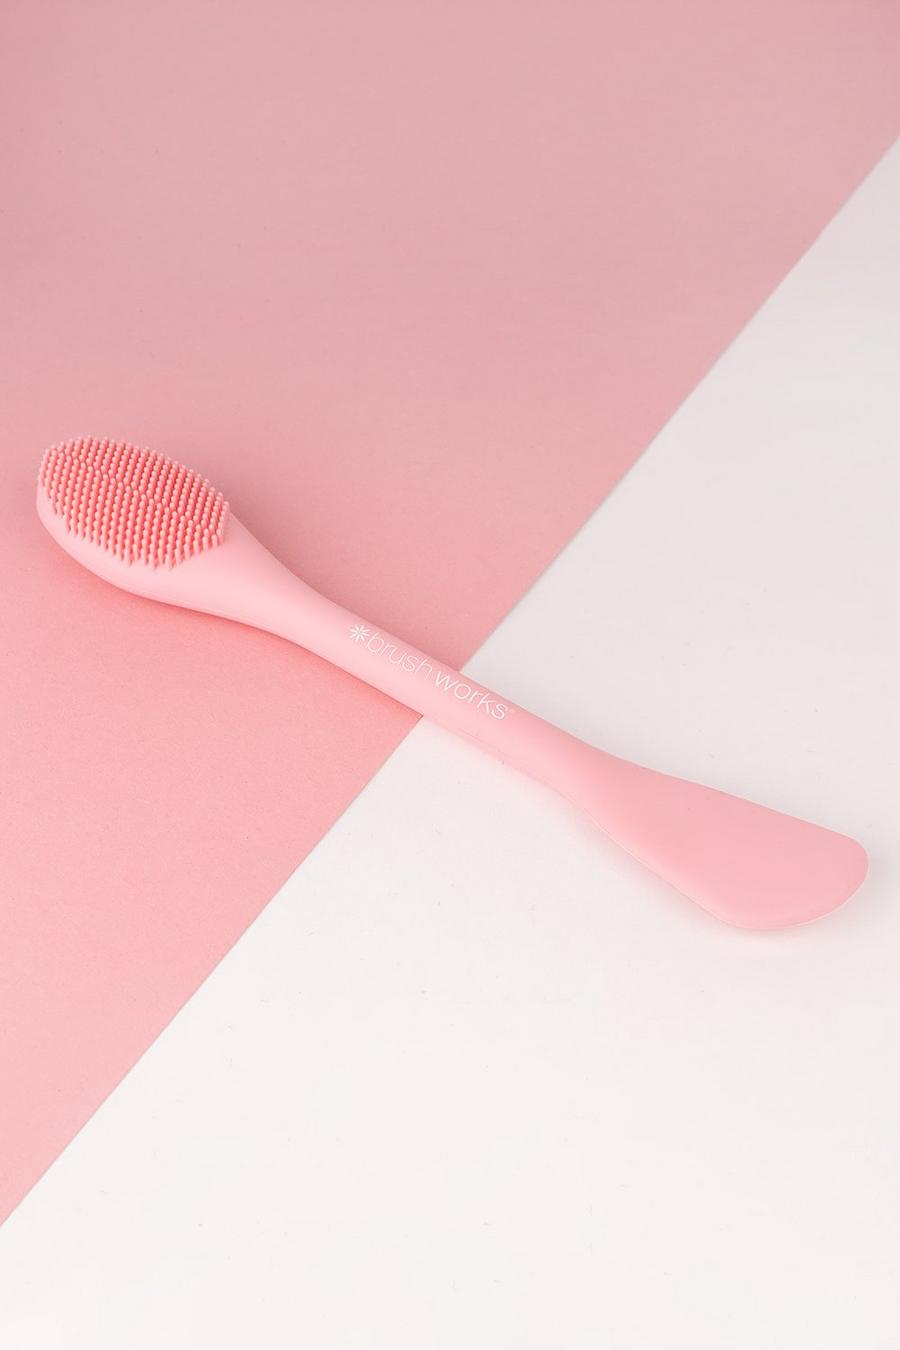 Brushworks Masken-Applikator, Baby pink